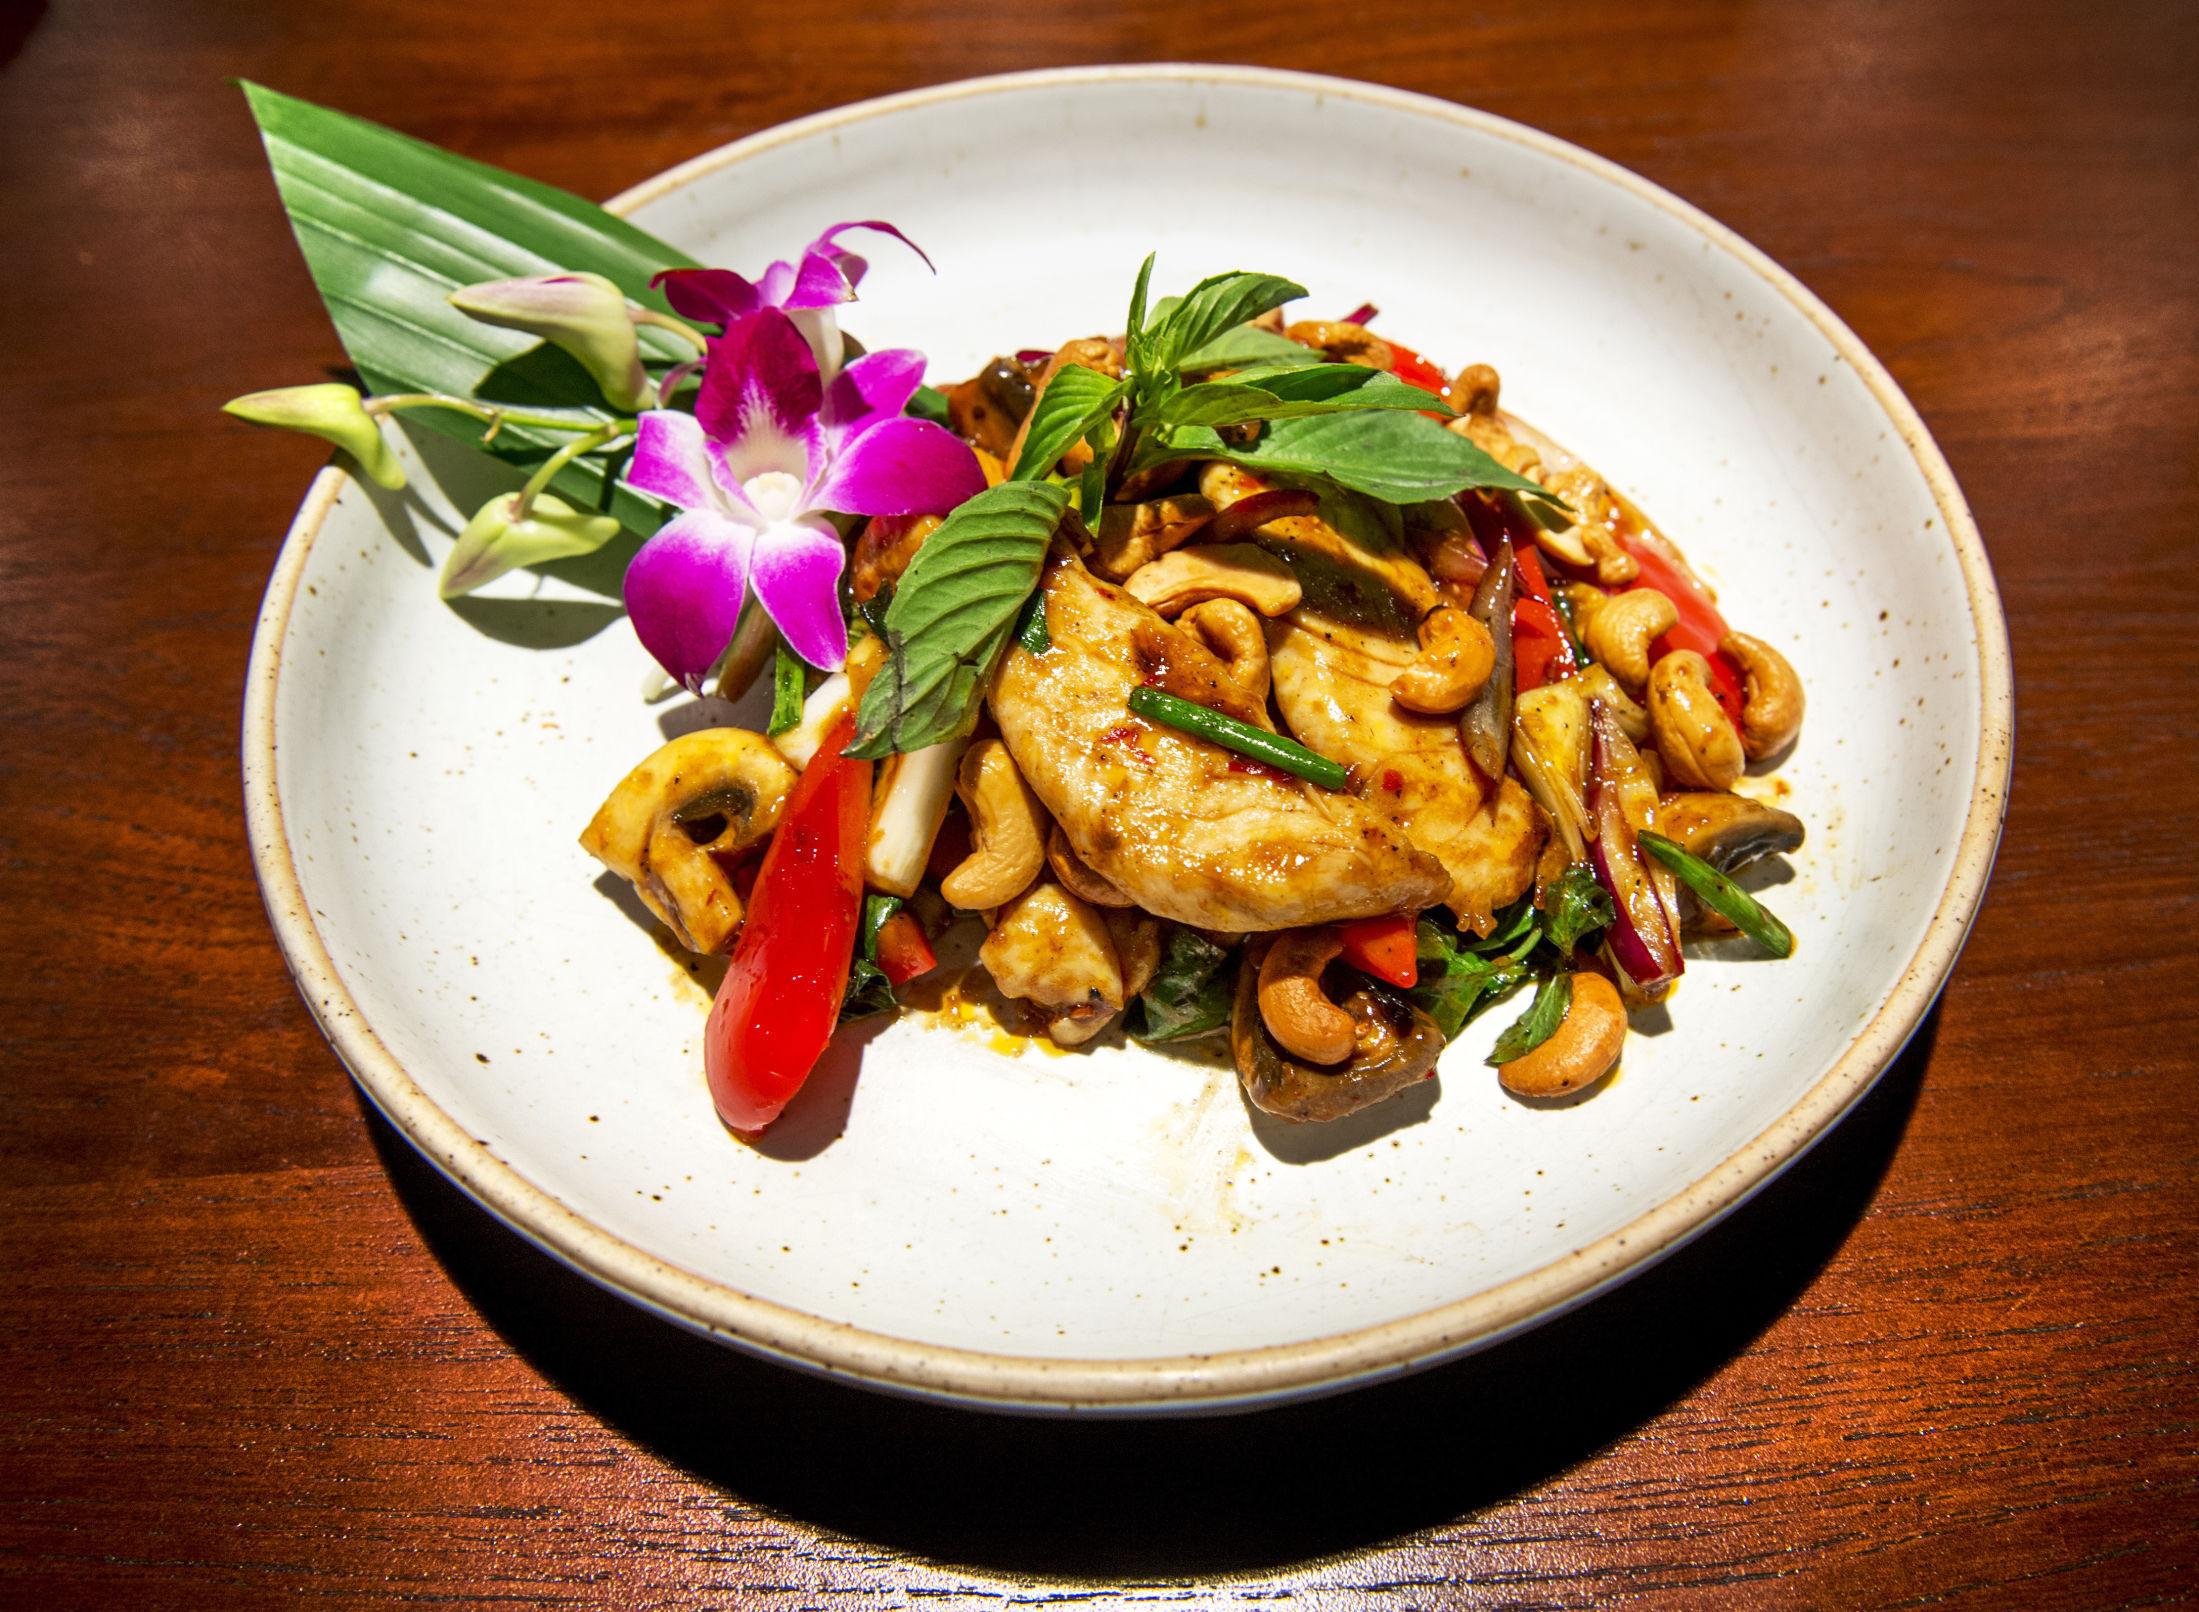 HELT THAI: Kylling med cashewnøtter er en typisk thailandsk rett - på Eat Thai serveres den med en lekker spiselig orkidé ved siden av. Foto: Helge Mikalsen/VG.